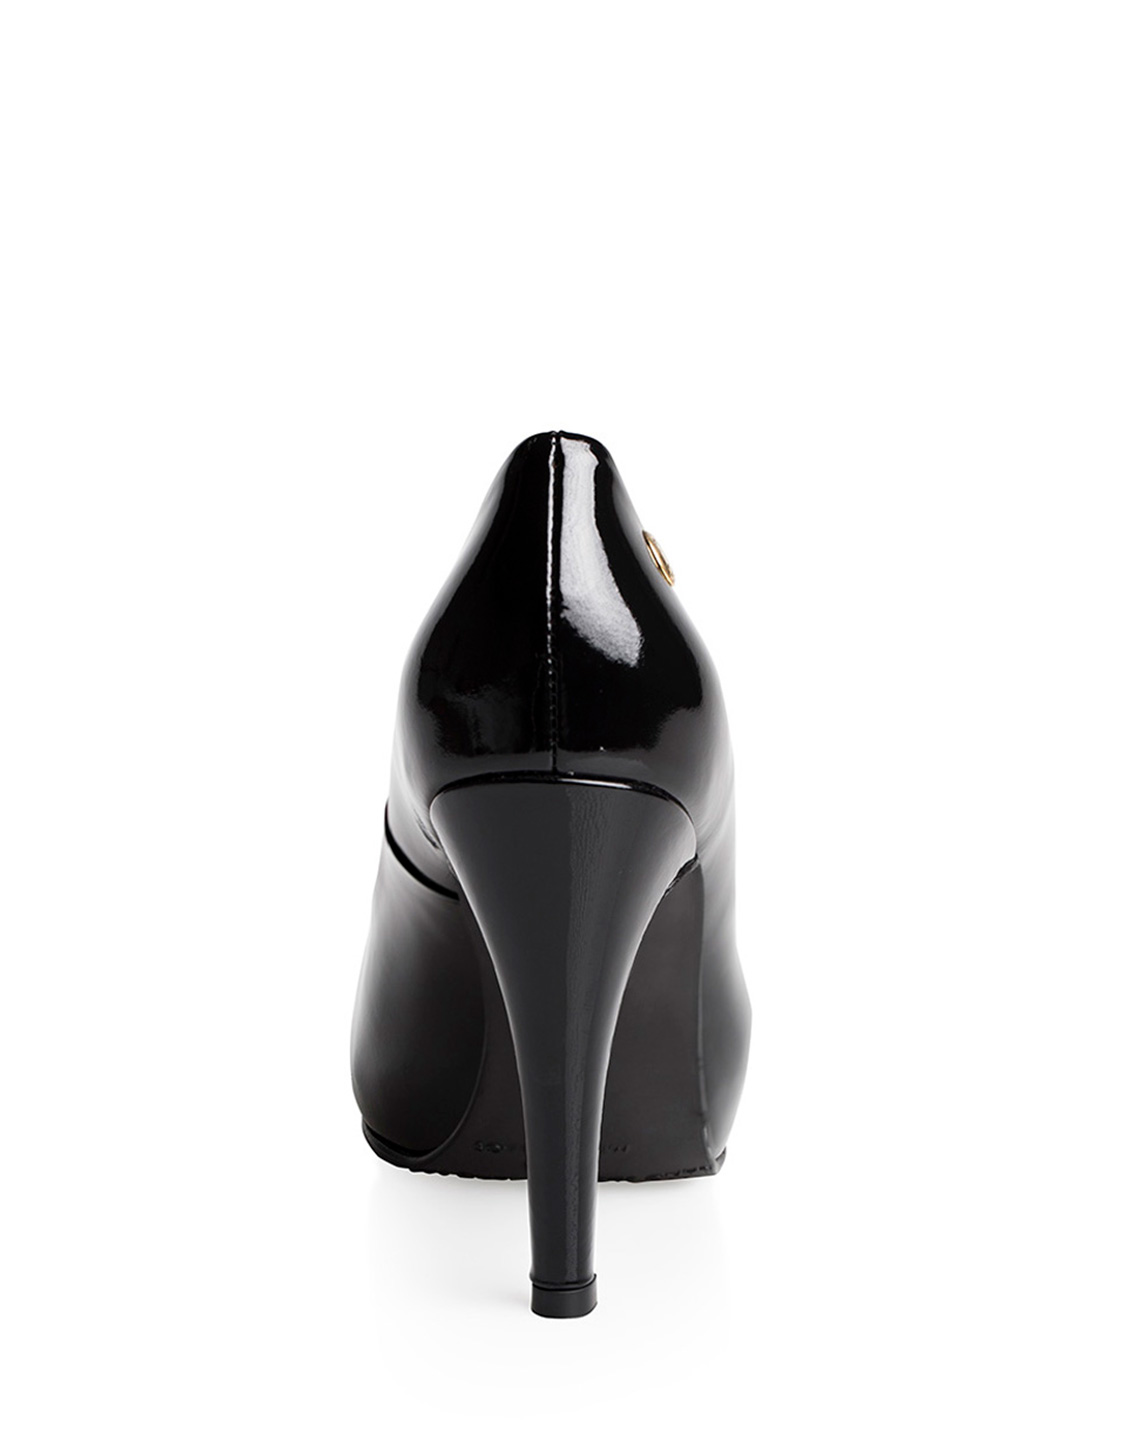 Calzado Reina Plataforma FR-6561 Color Fulonado Negro